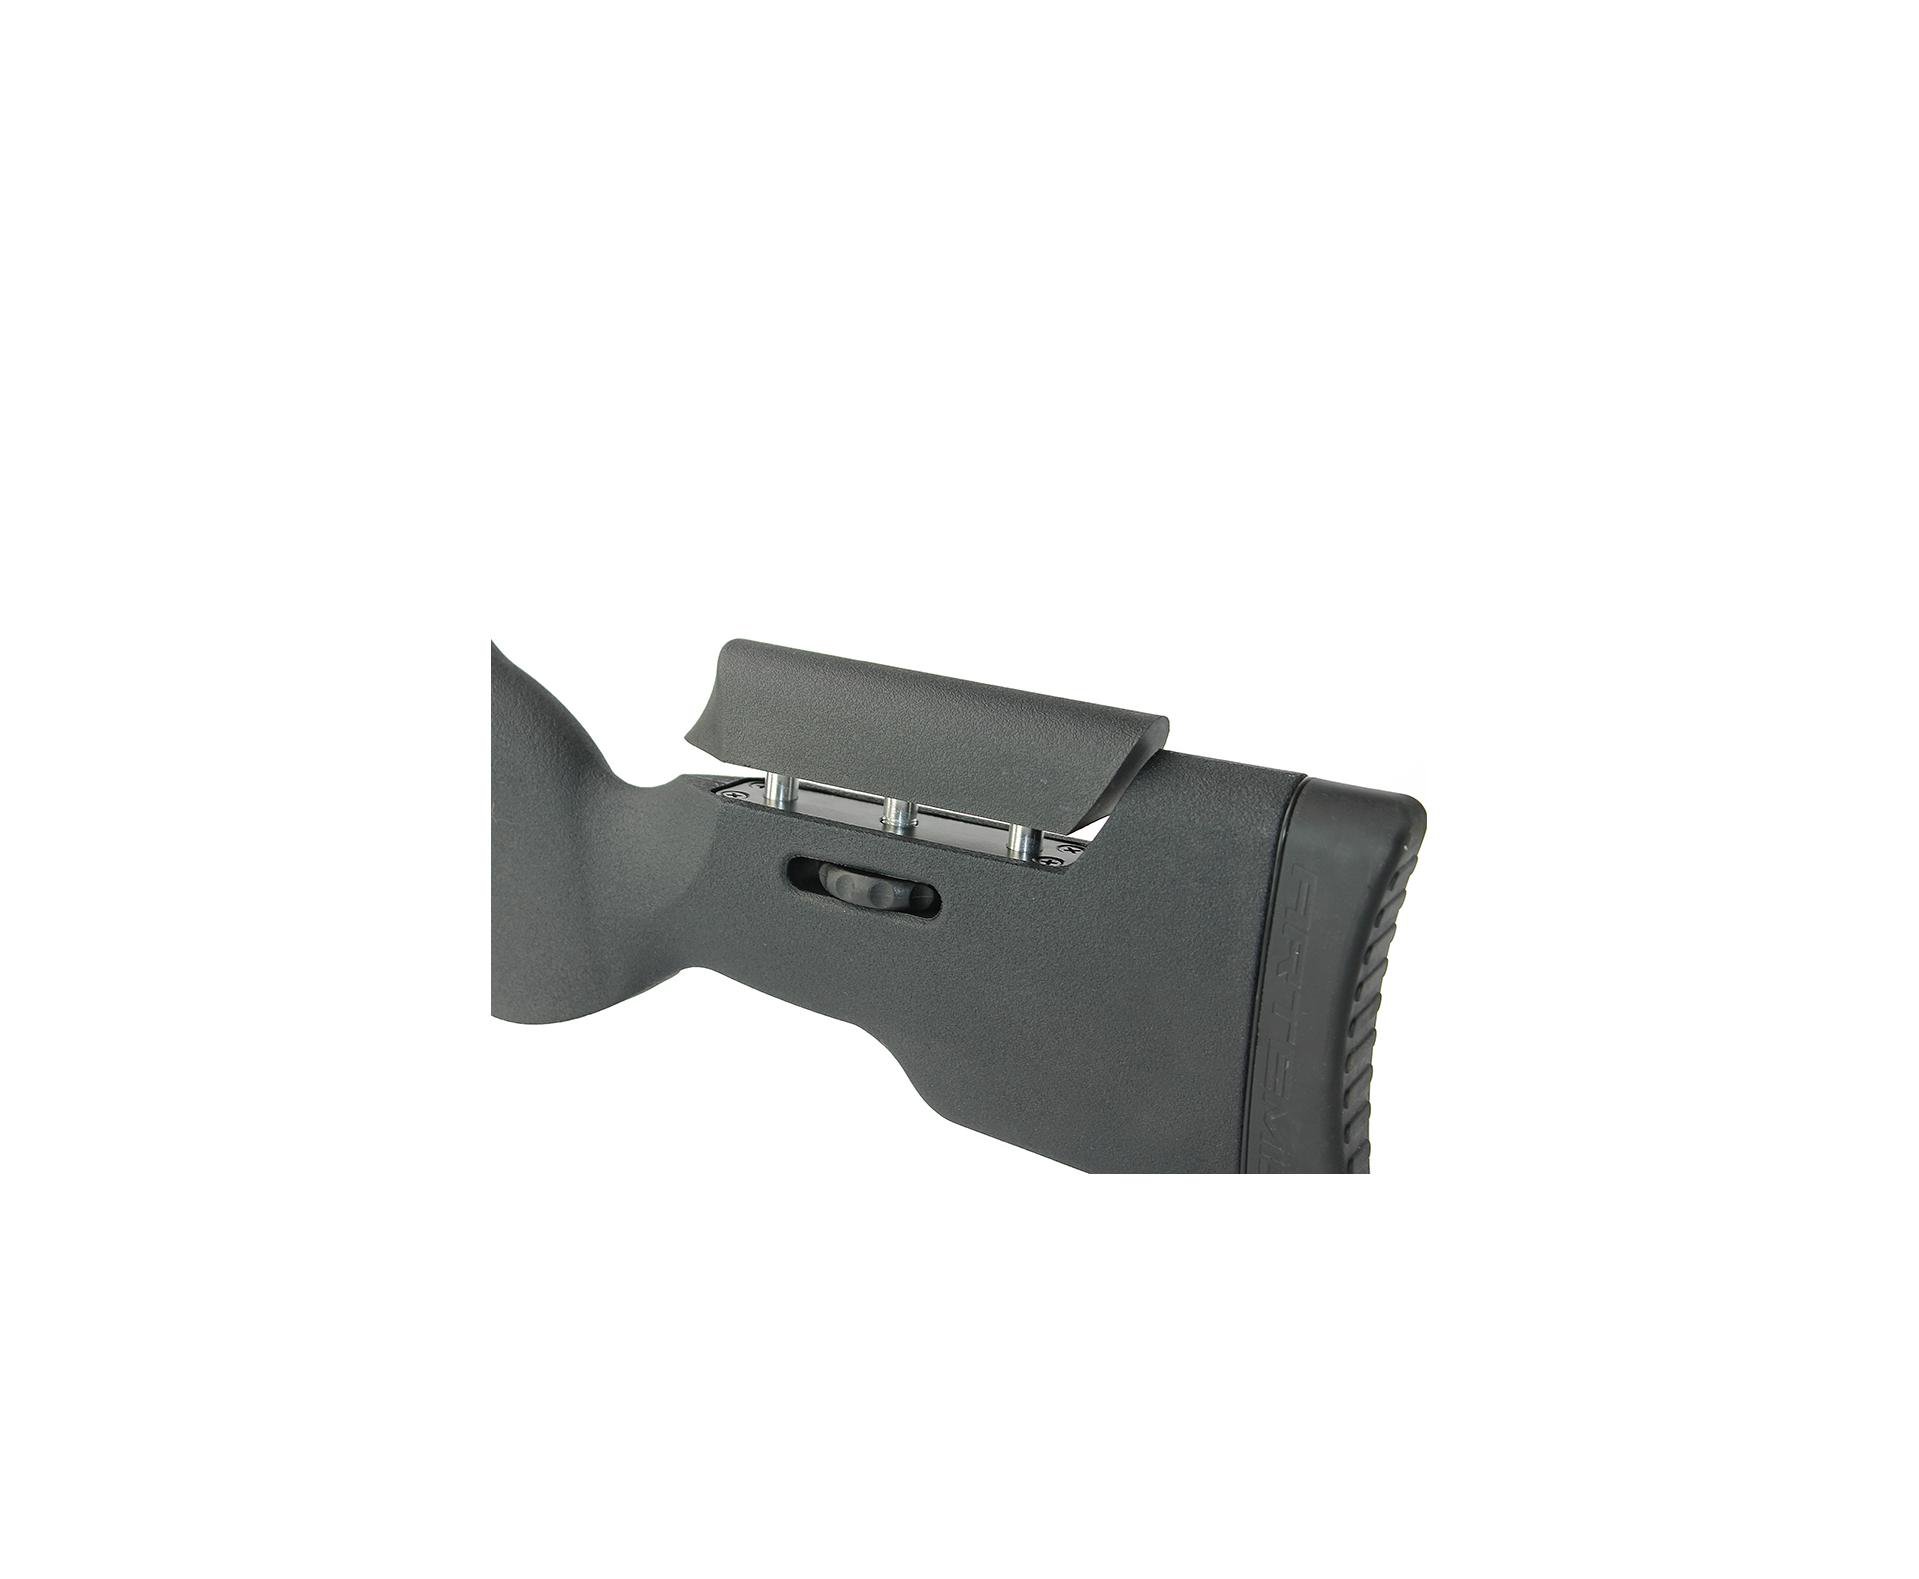 Carabina De Pressão Artemis Gp 1250 Sniper Gas Ram 70kg Black 4,5mm + Bipé + Luneta + Supressor